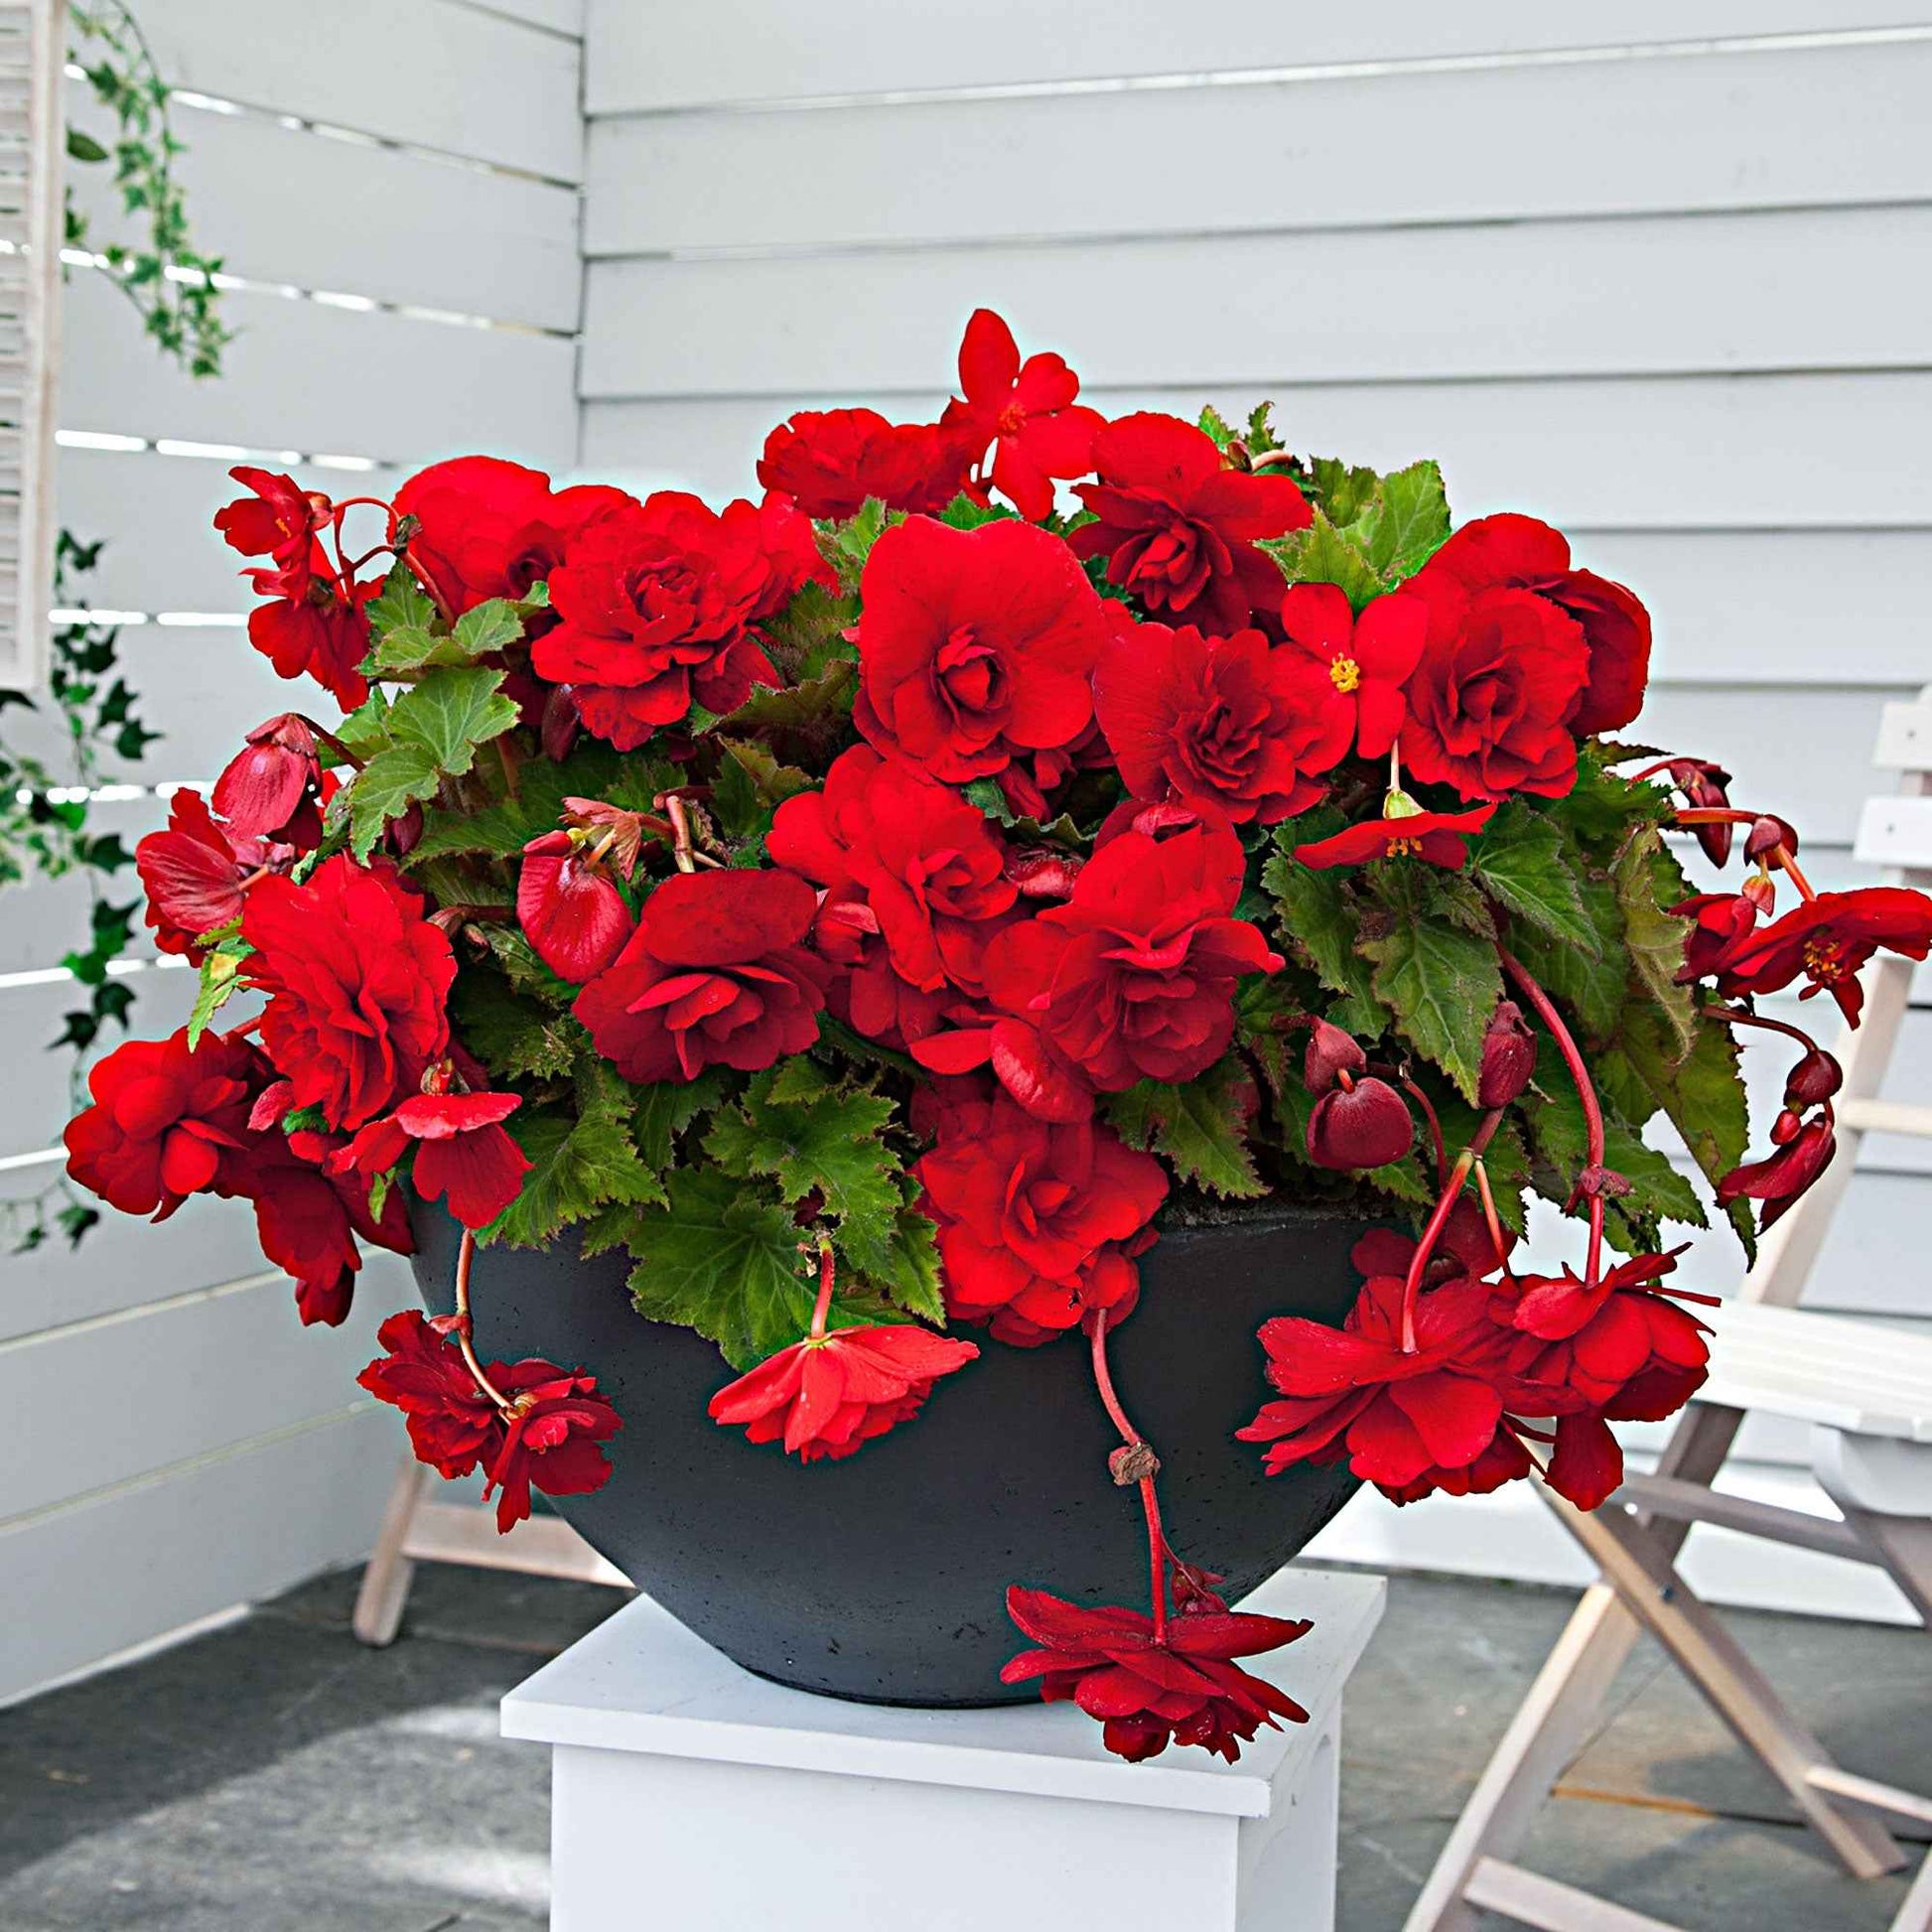 5x Bégonia pendula 'Scarlet' rouge Rouge - Bulbes de fleurs pour la terrasse et le balcon